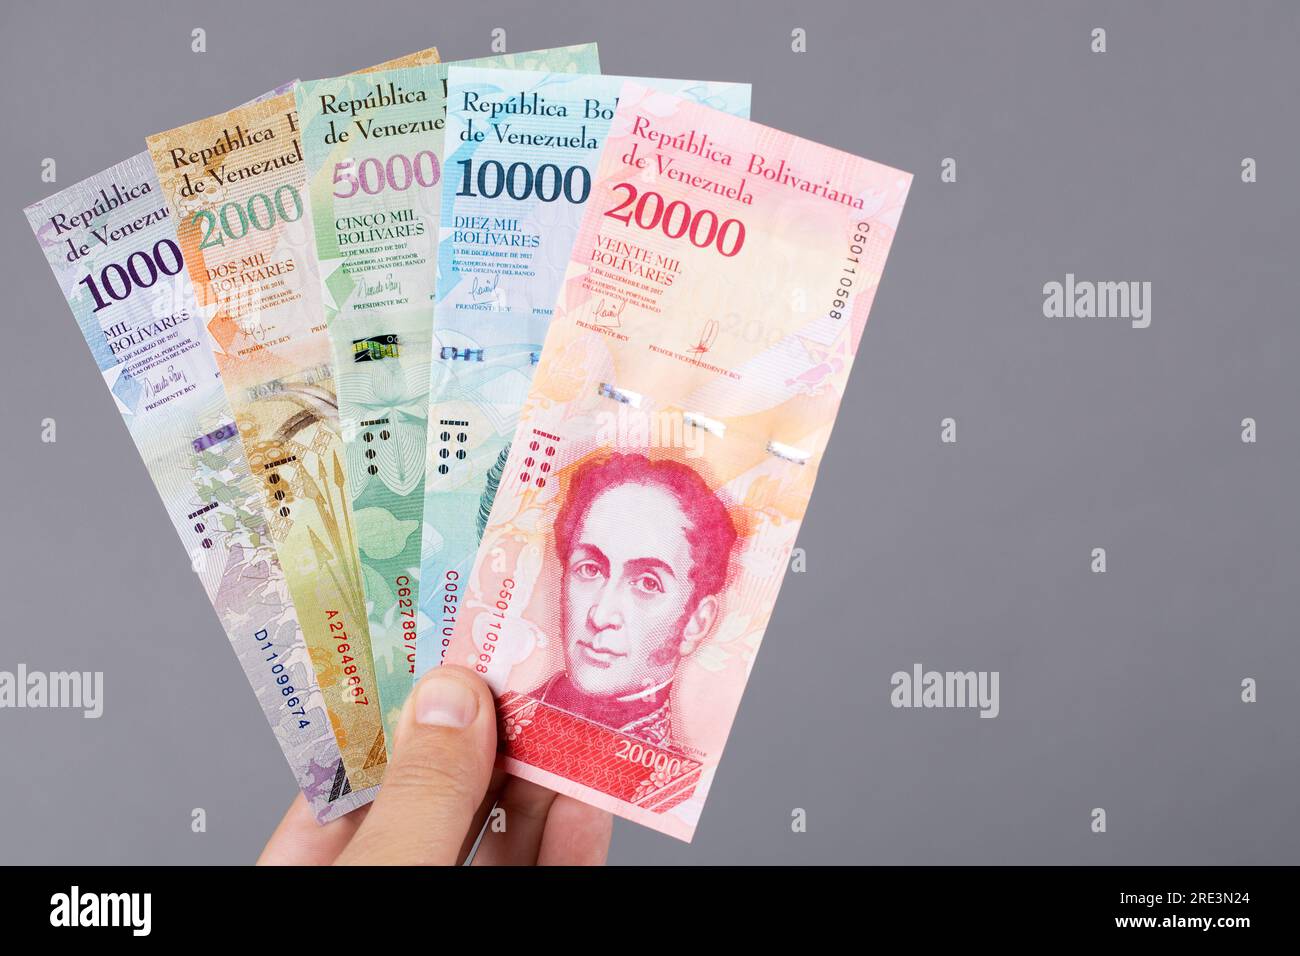 Argent vénézuélien - Bolivar dans la main sur un fond gris Banque D'Images